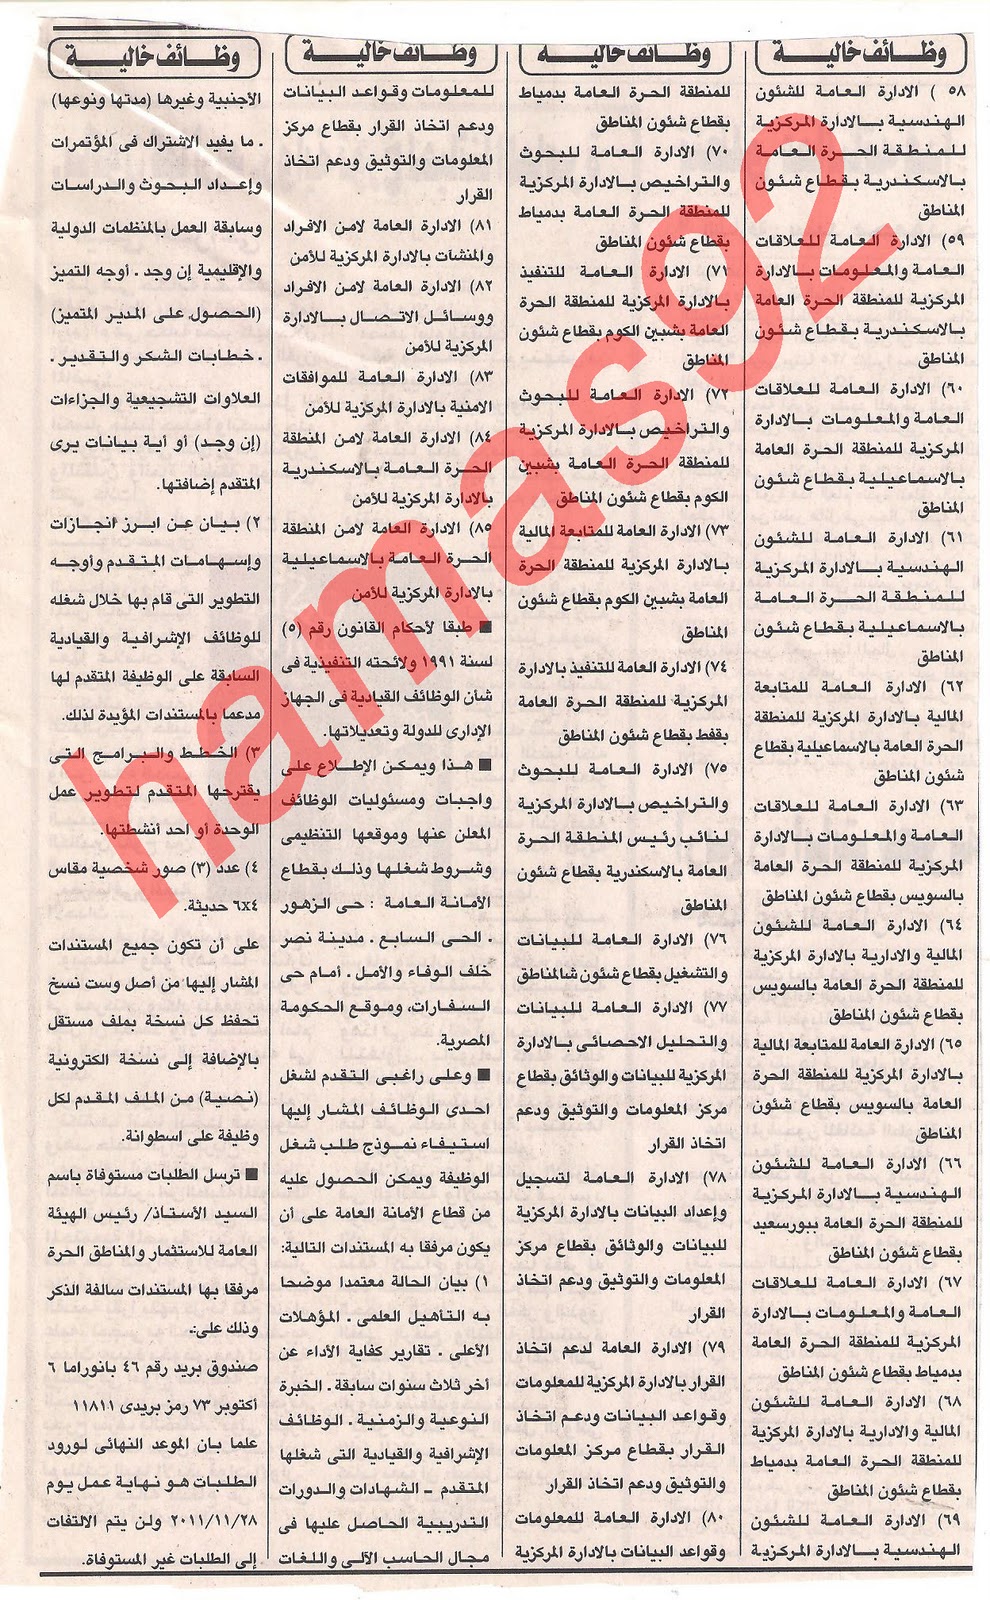 وظائف جريدة الاهرام الثلاثاء 15 نوفمبر 2011  Picture+001